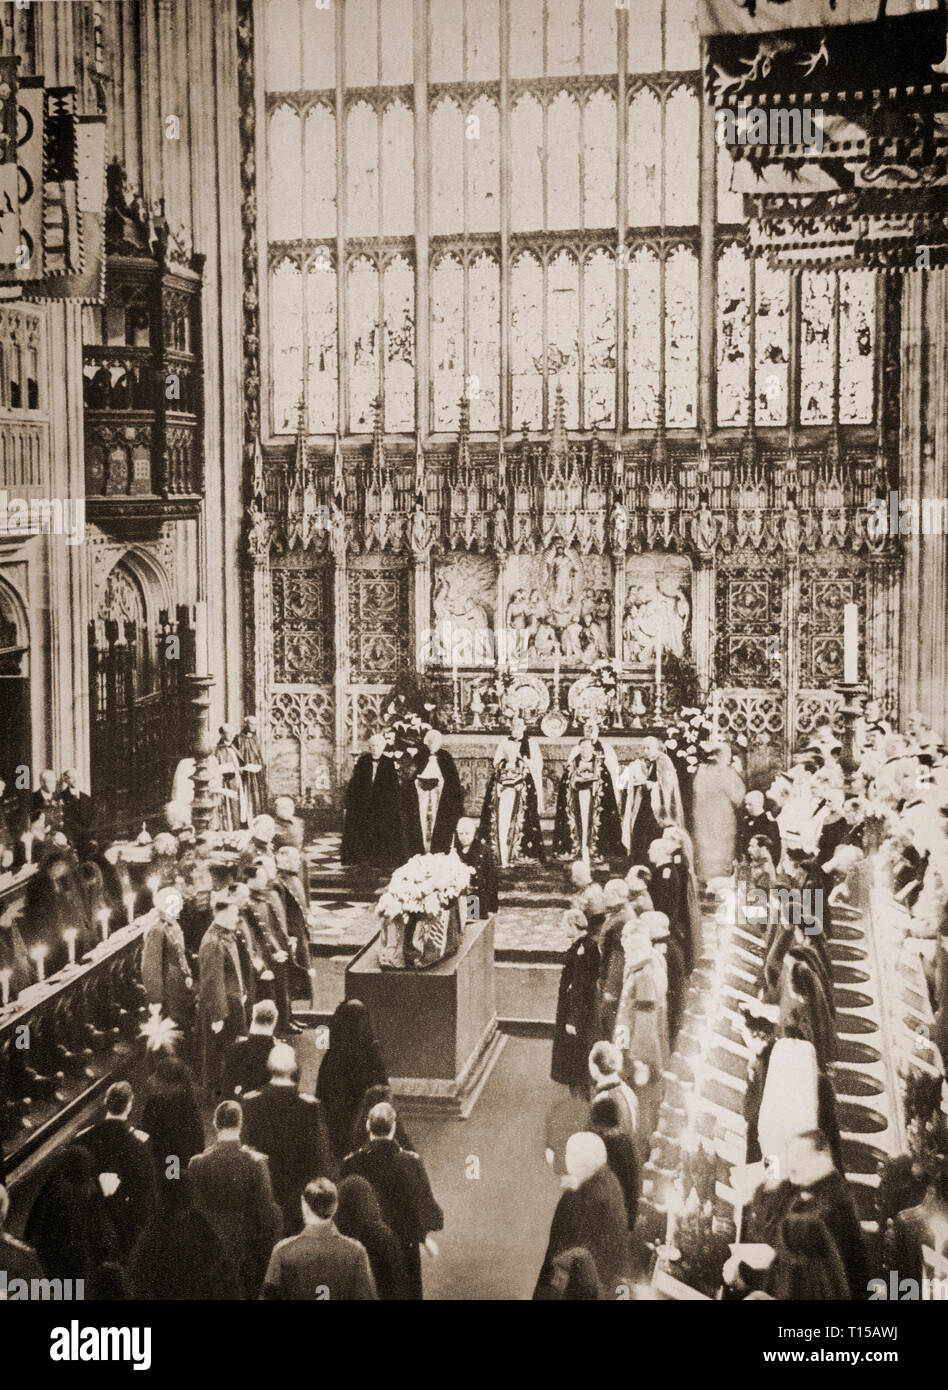 Les funérailles du roi George V, atteneded par les rois et les membres de nombreuses familles royales européennes, dans la chapelle de St George dans le château de Windsor, Berkshire, Angleterre le 28 janvier 1936. Banque D'Images